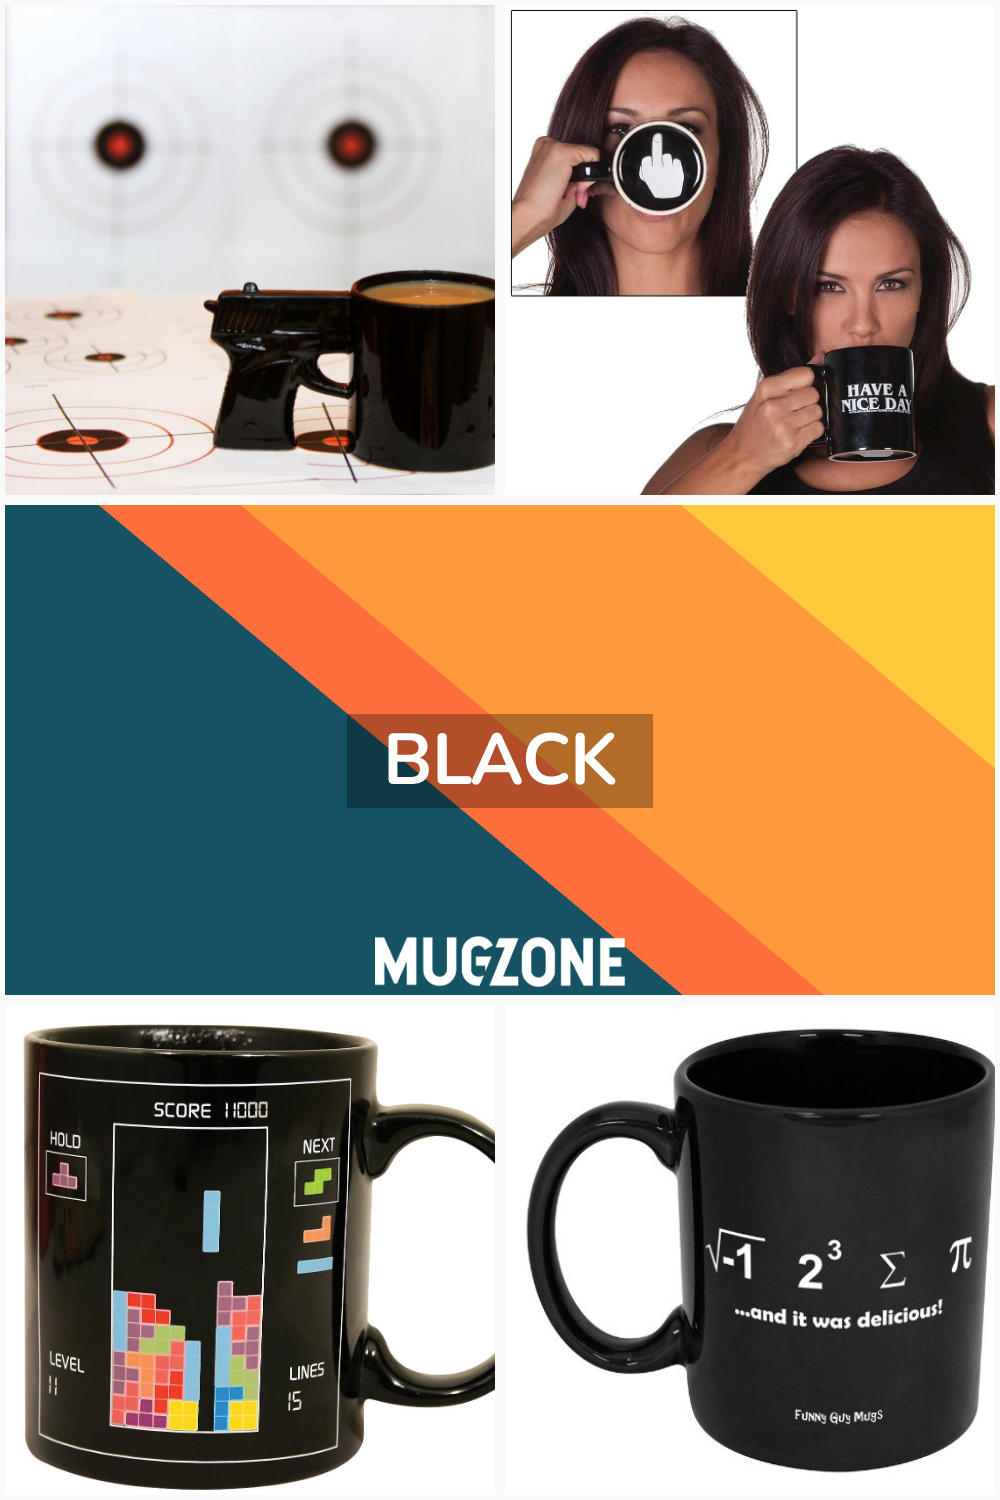 black // Mug Zone